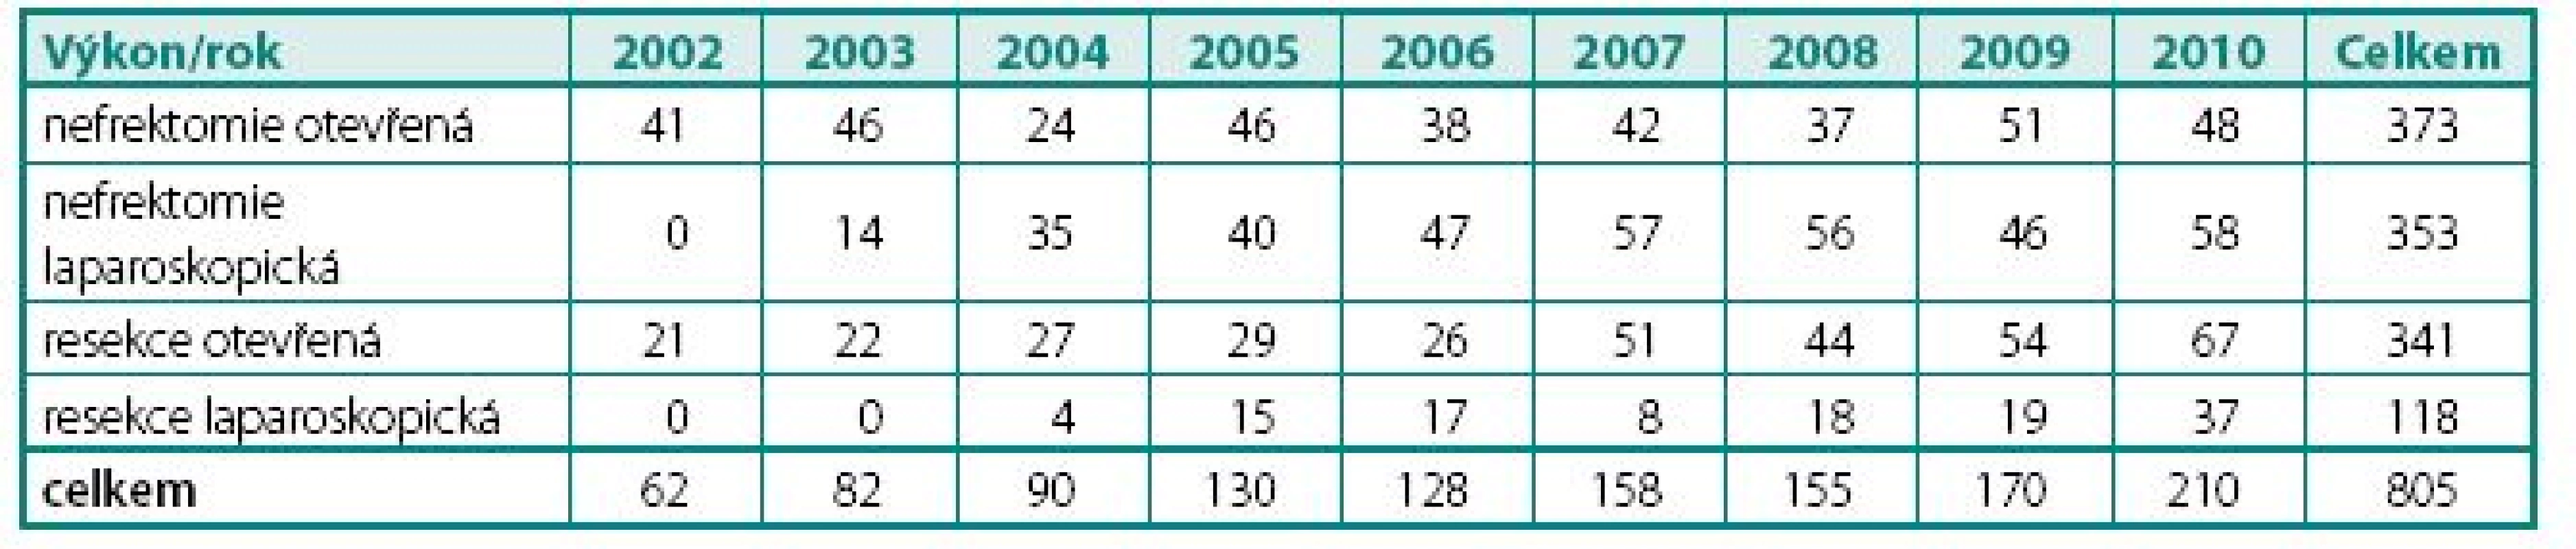 Počty výkonů pro nádory ledvin v letech 2002–2010
Table 2. Numbers of surgical procedures for kidney tumours